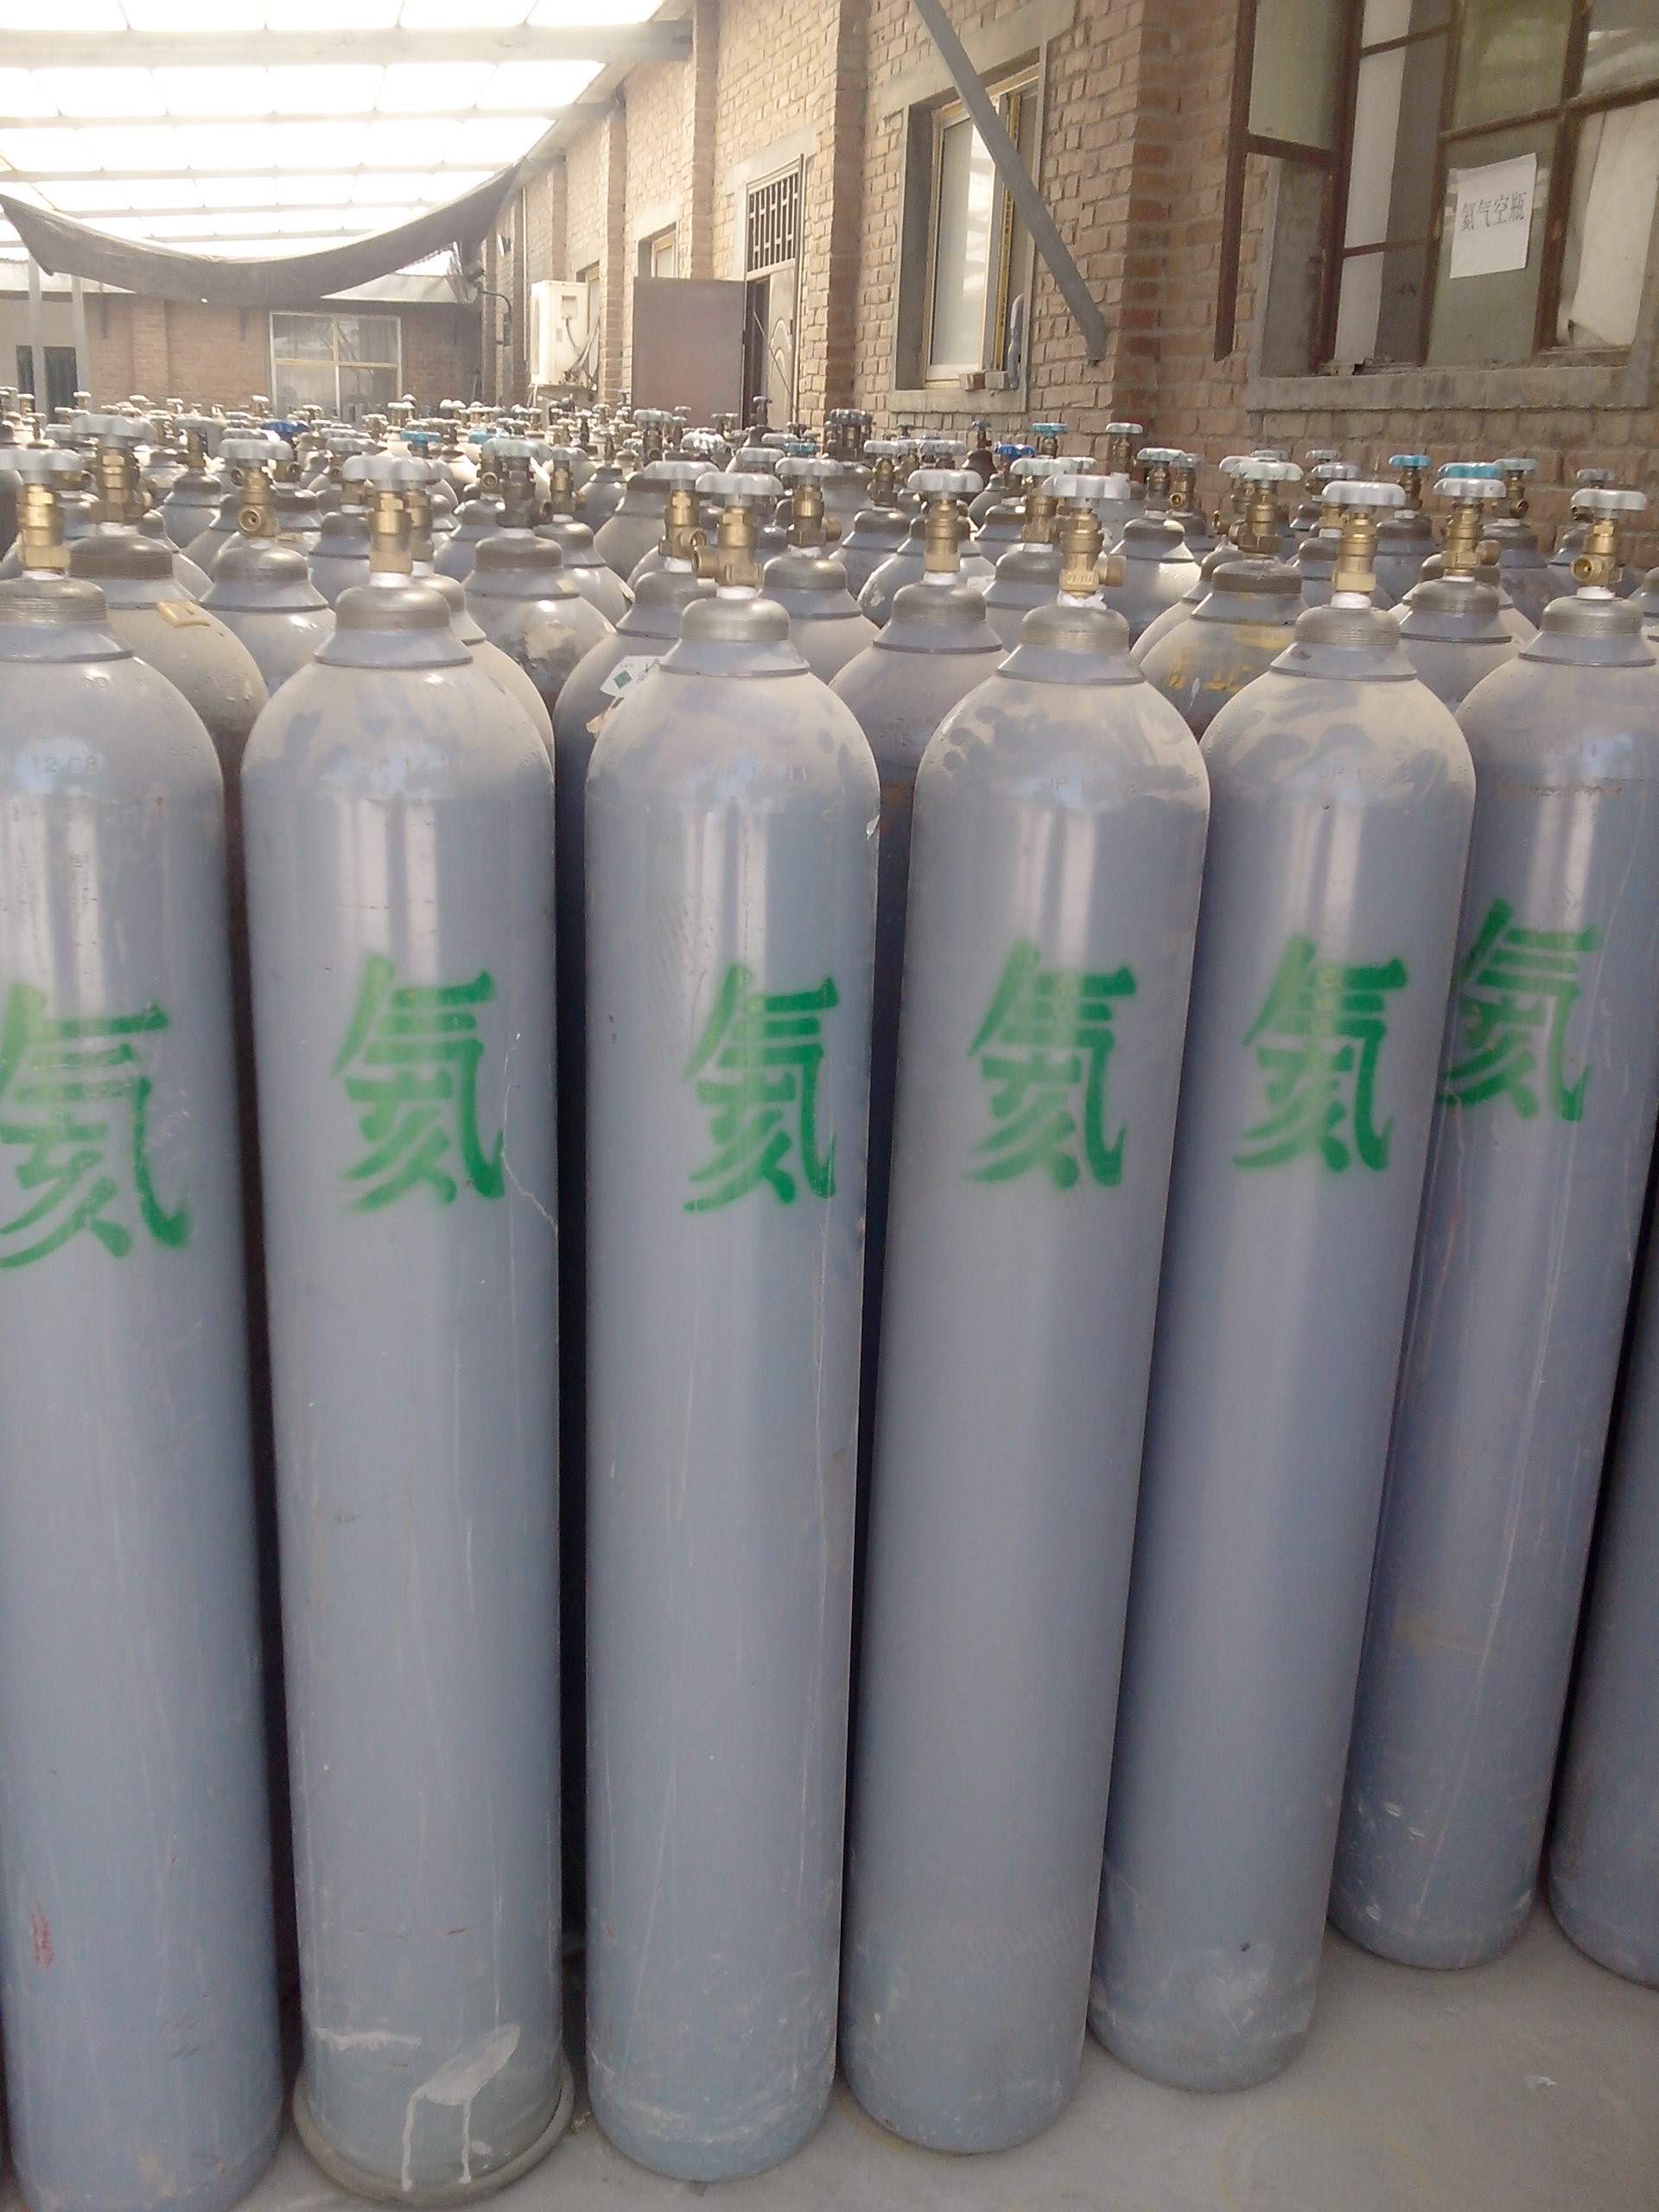 天津西青区高纯h2氦气 工业气体公司 全市配送上门 利信气体